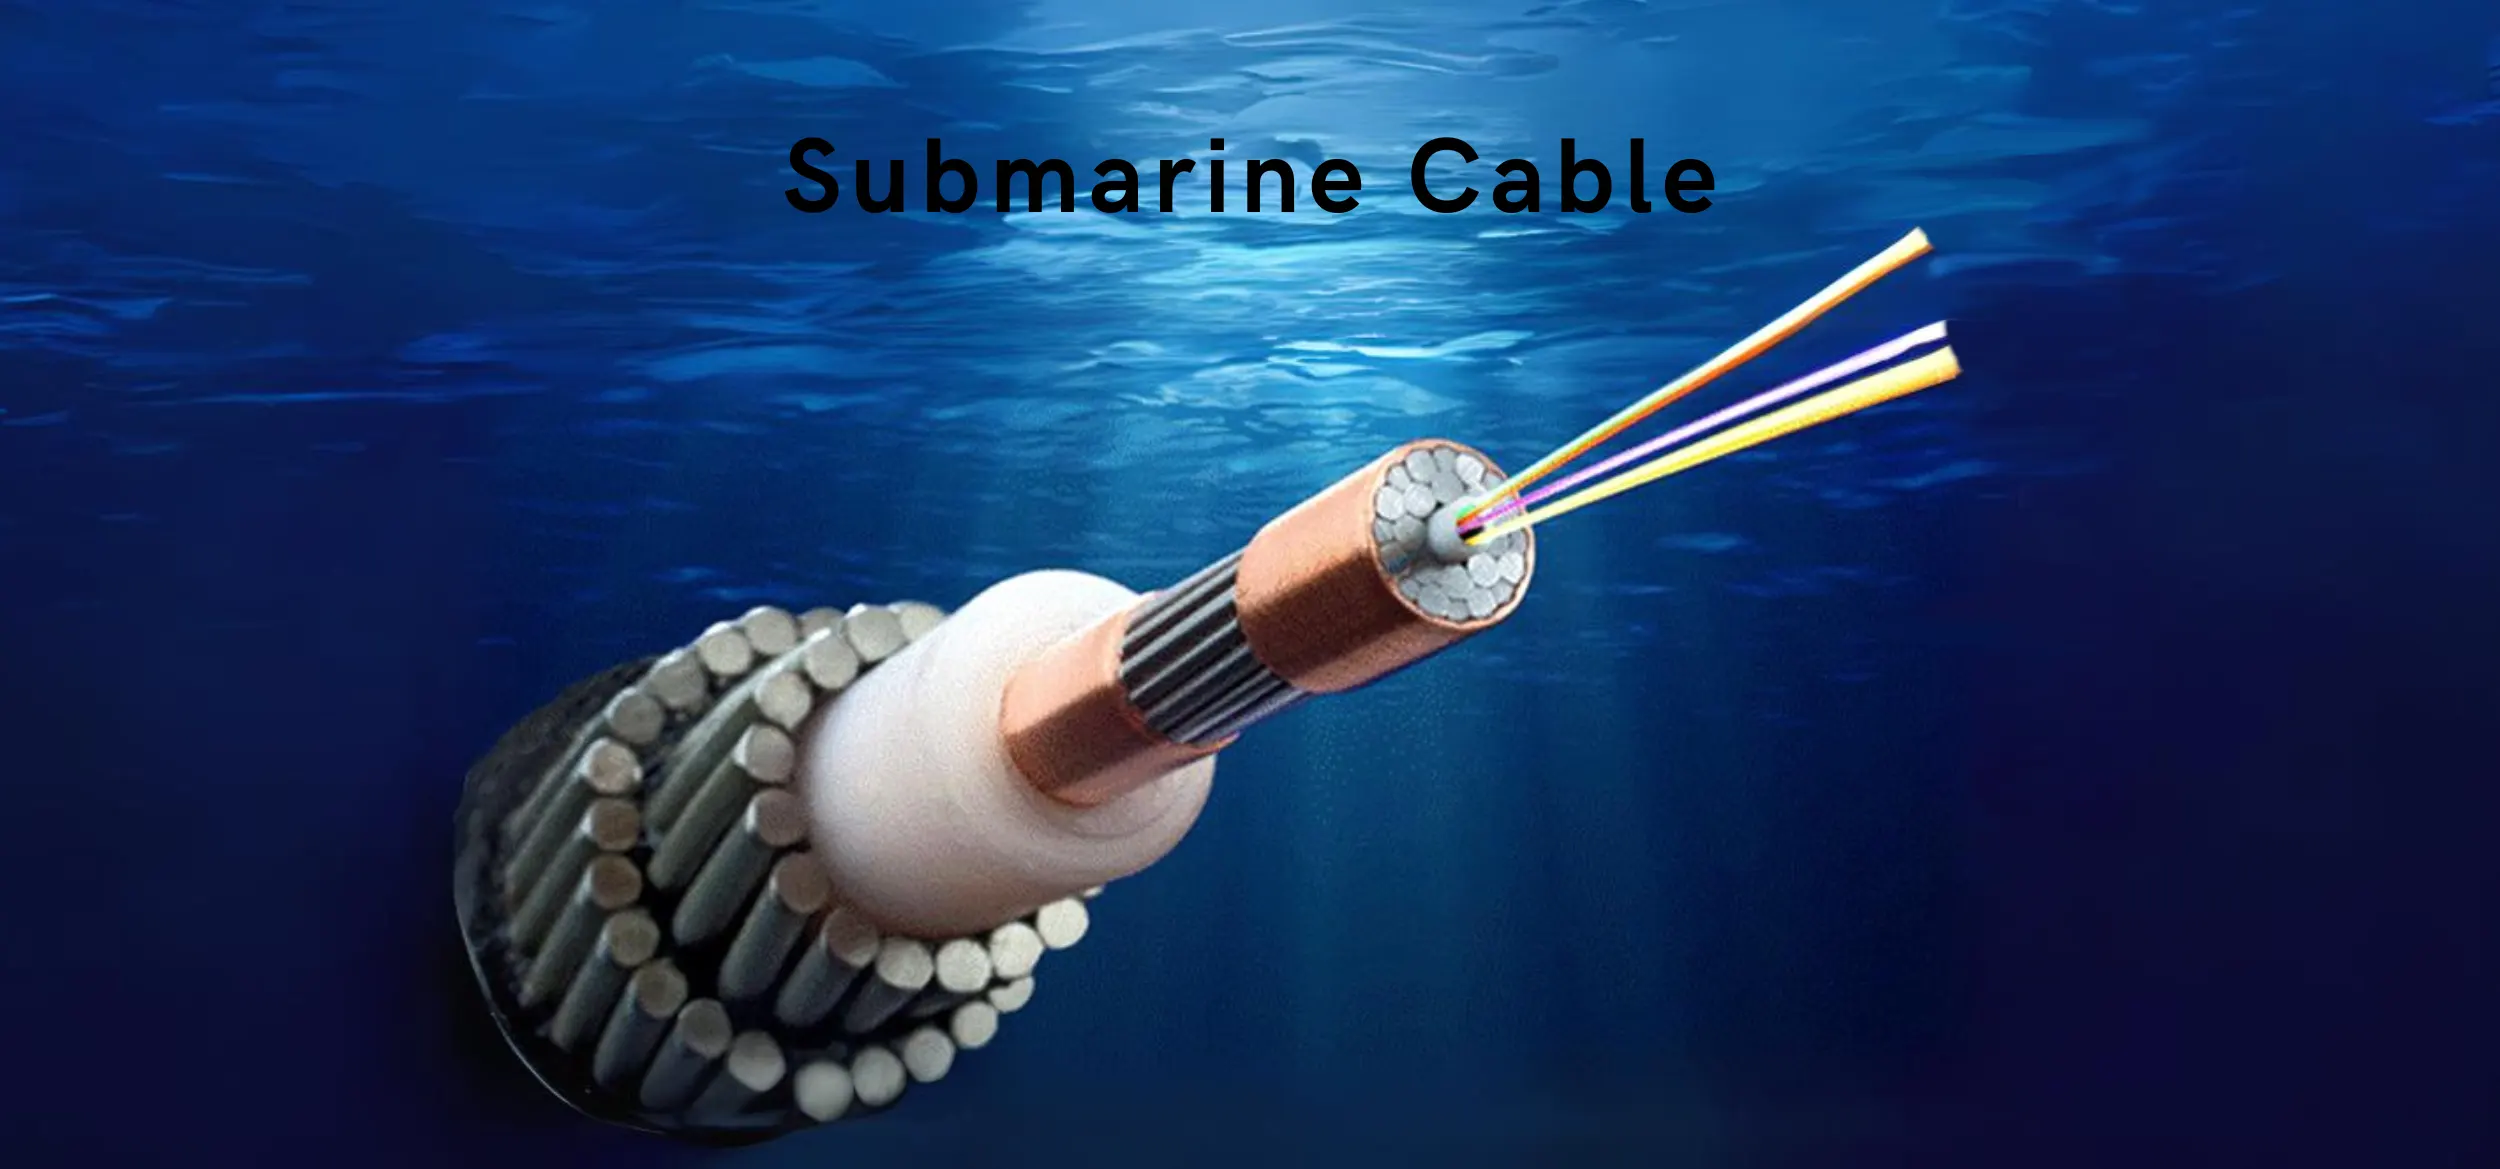 Fiber optic submarine cable